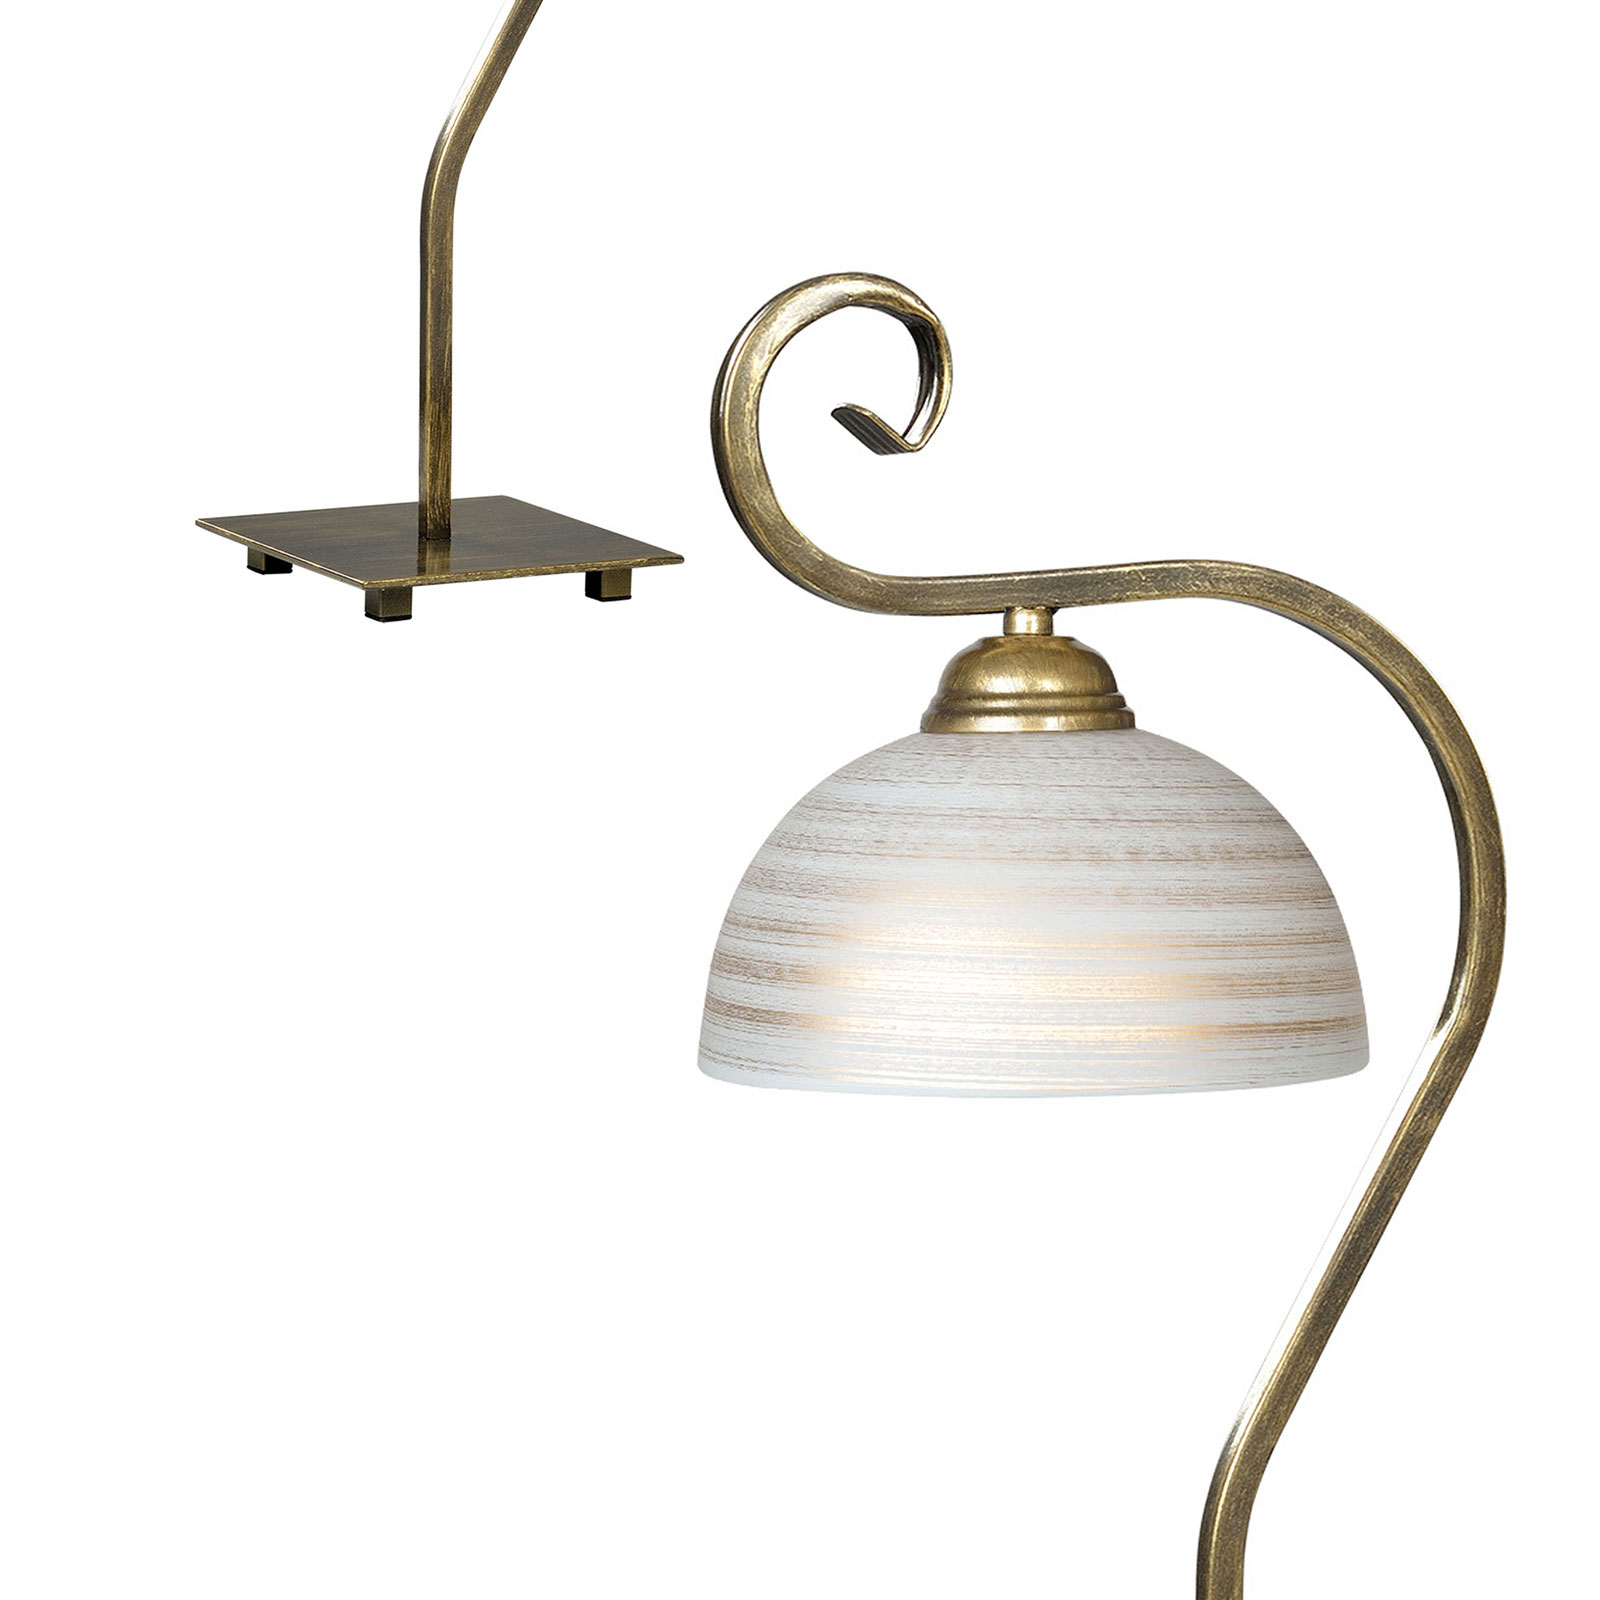 Lampa stołowa Wivara LN1 klasyczny design, złota